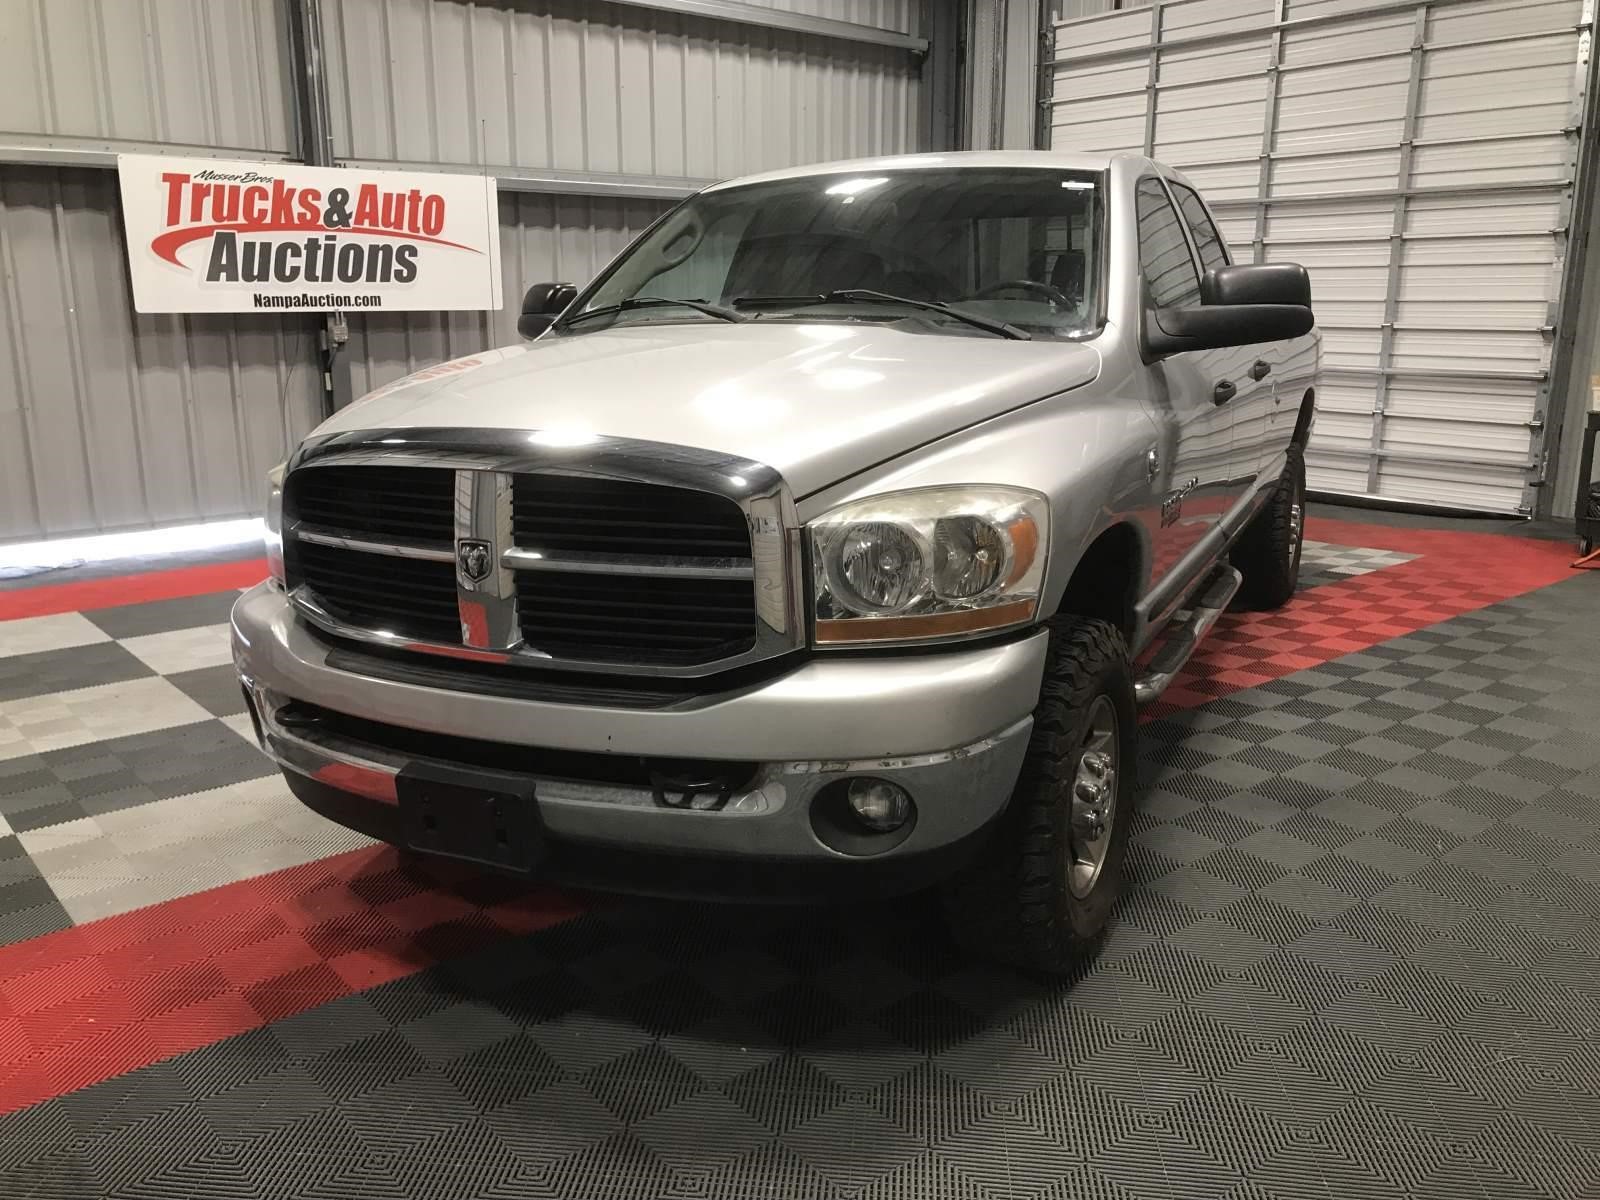 021518 Trucks & Auto Auction